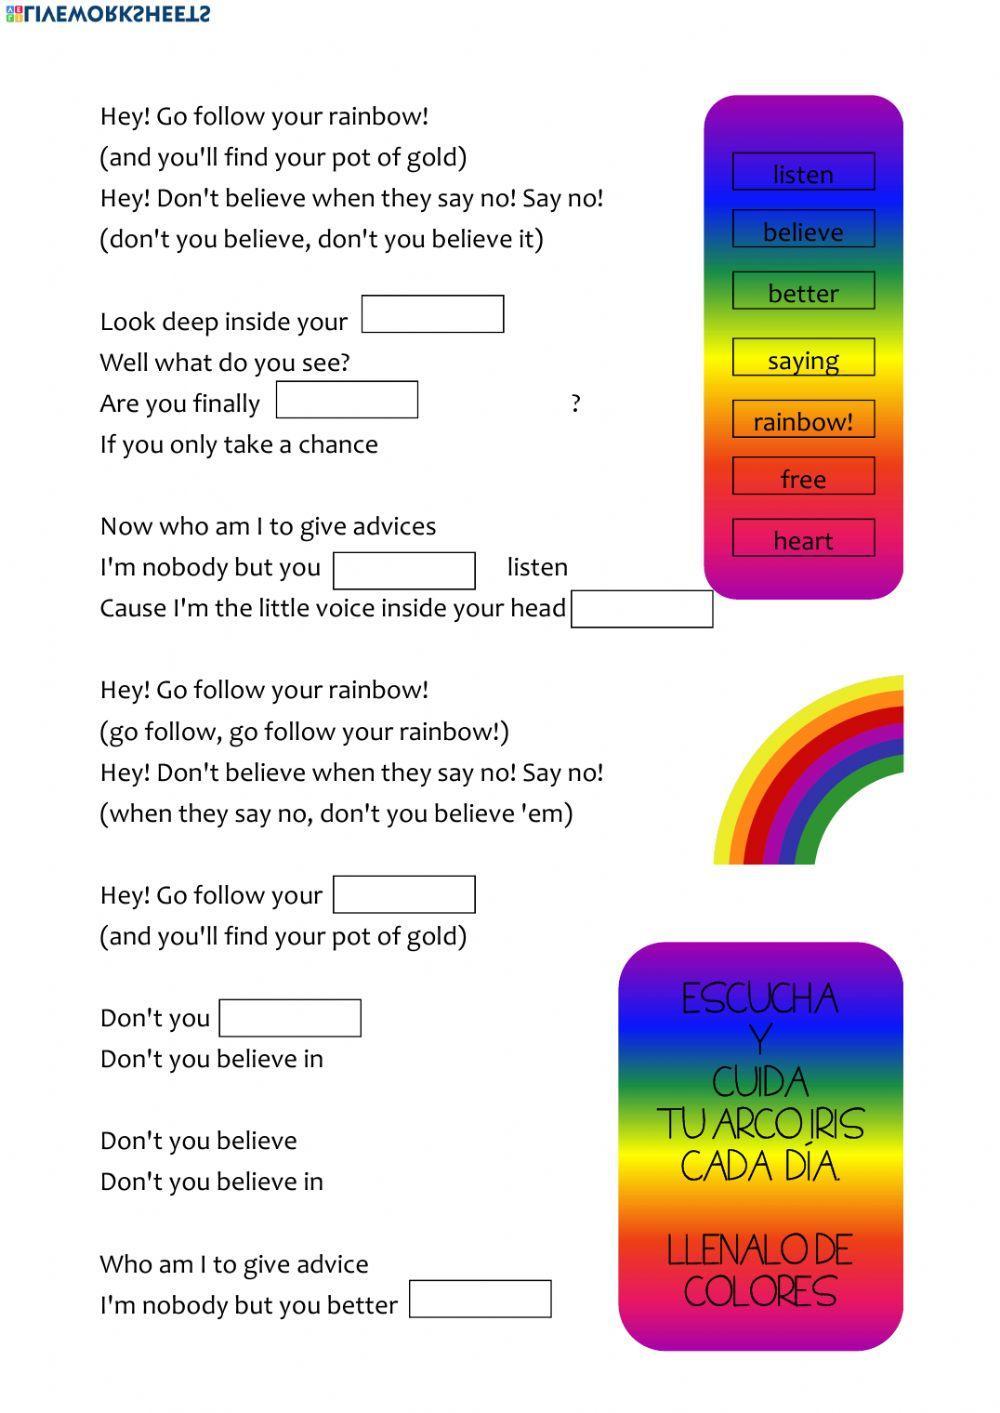 Follow your rainbow song